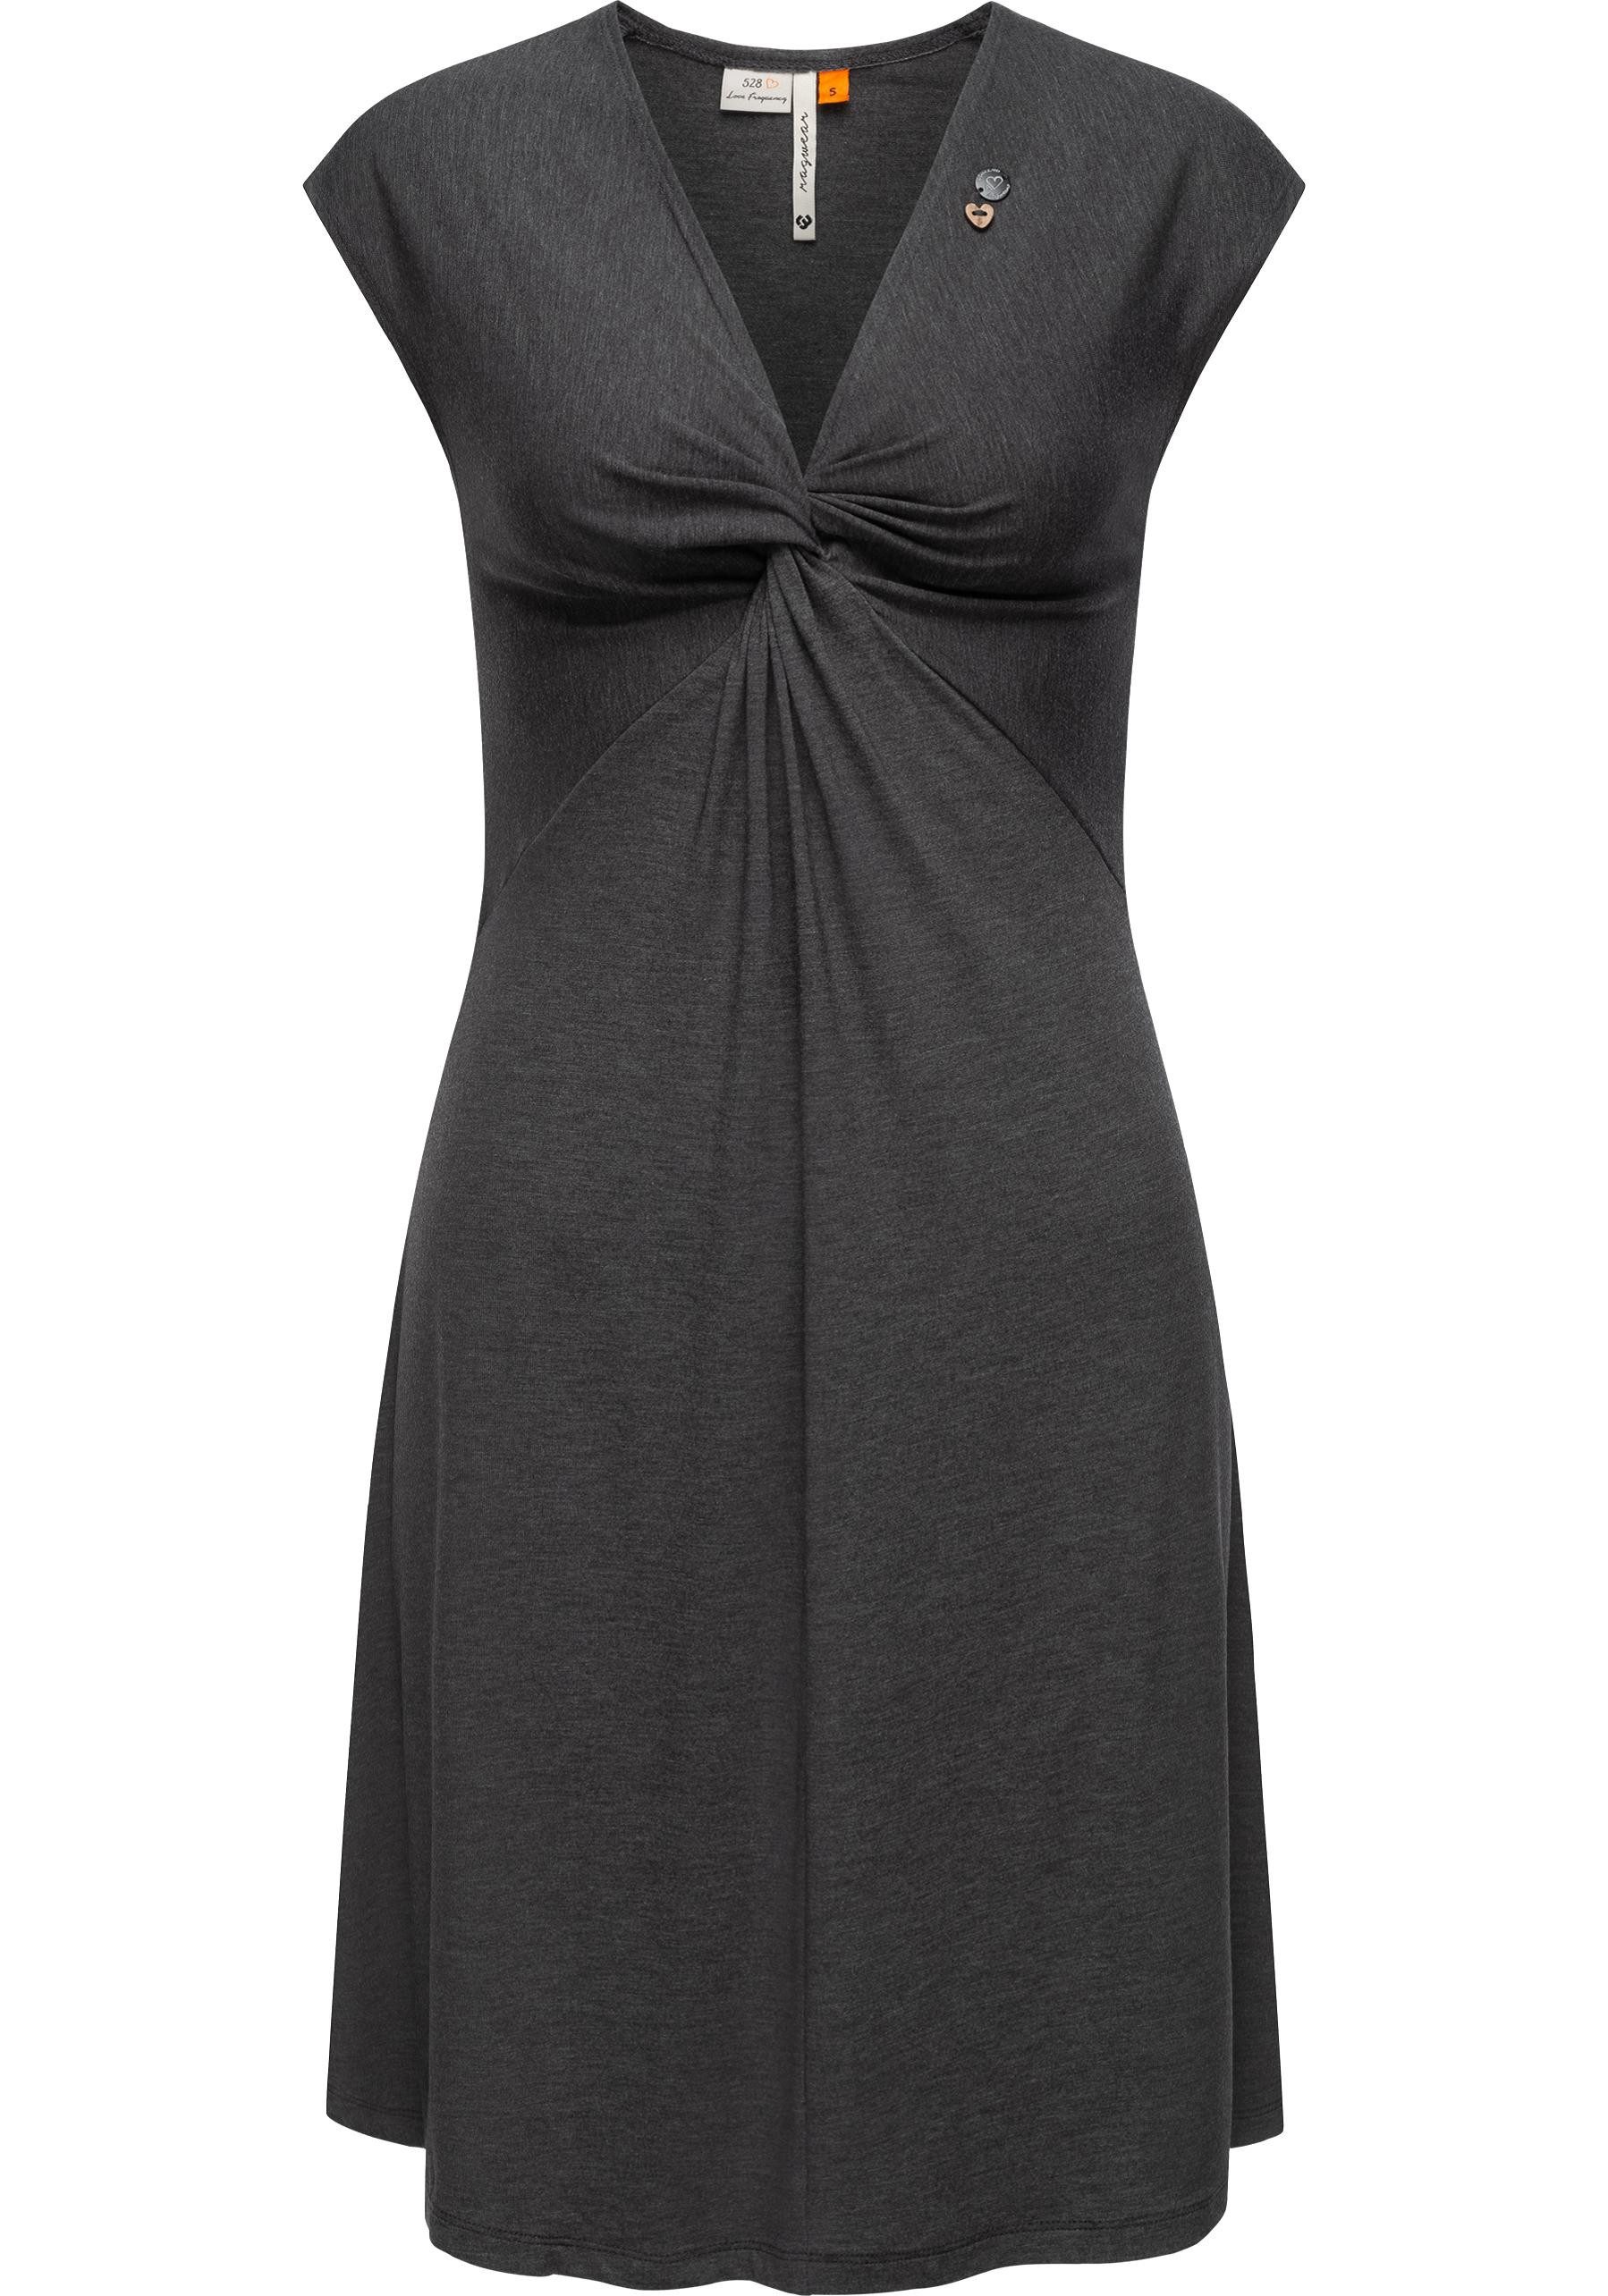 Ragwear Jerseykleid Comfrey Solid stylisches Sommerkleid mit tiefem V-Ausschnitt